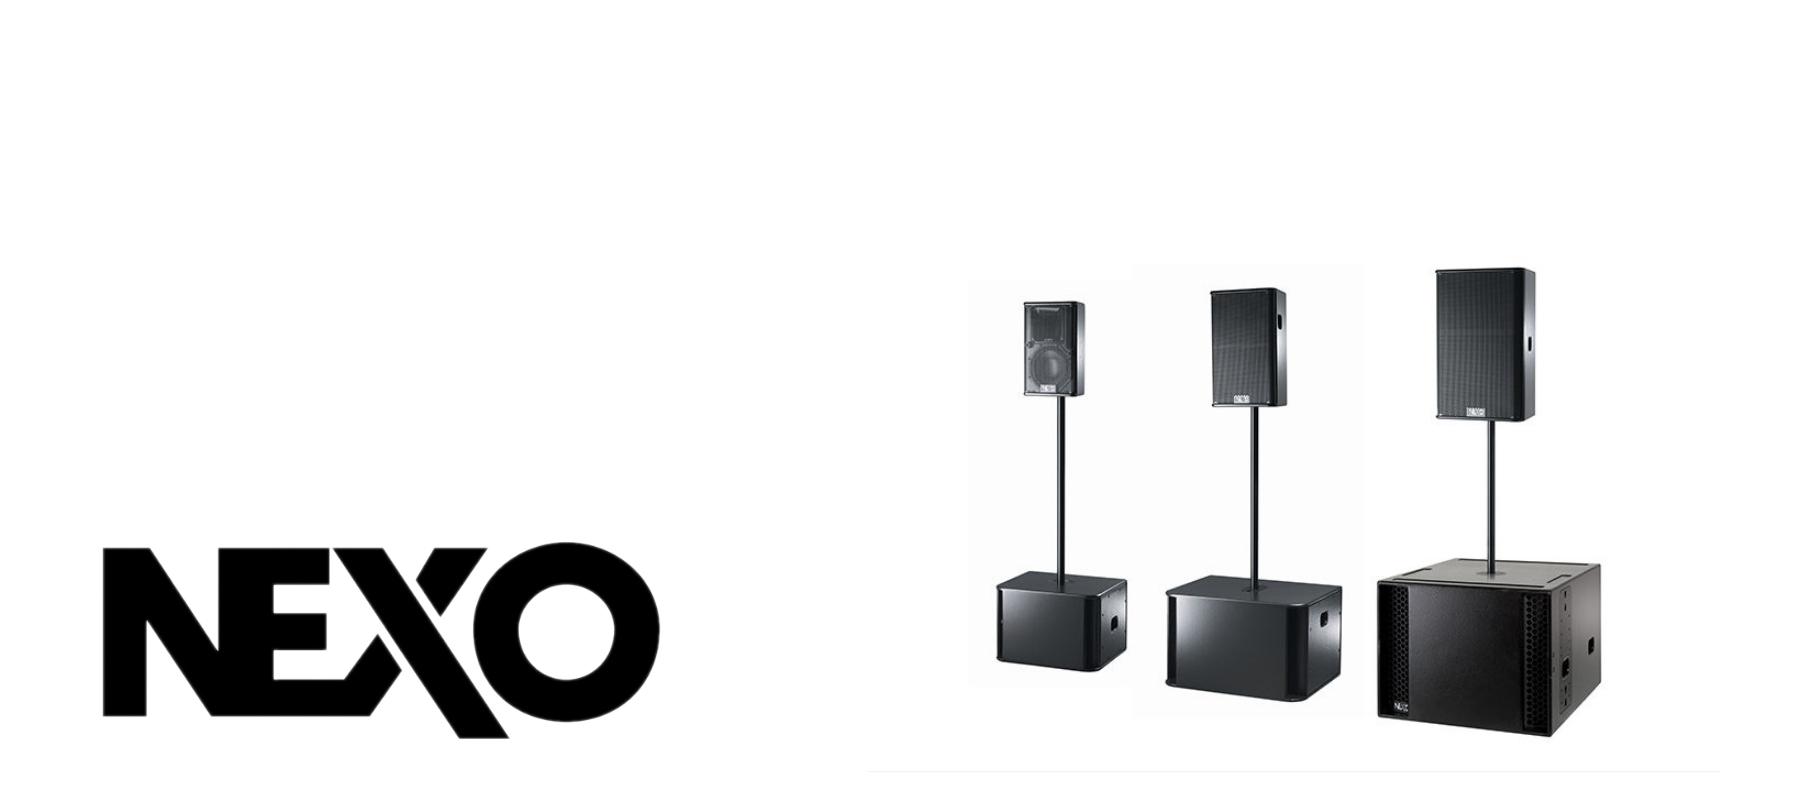 Nexo speakers - Media Service België